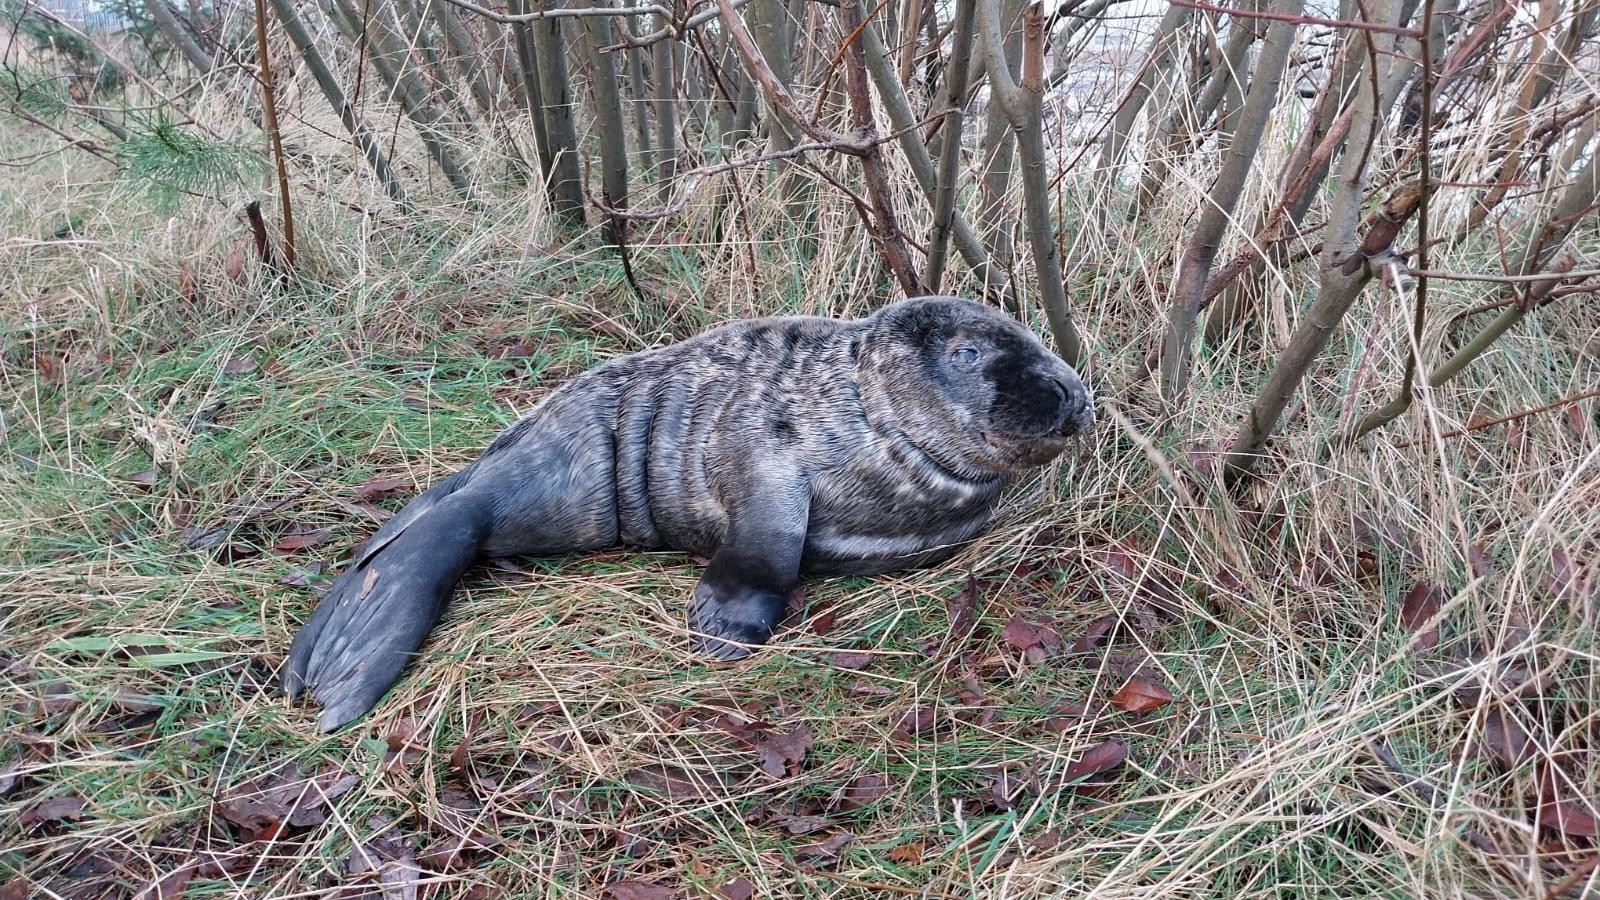 injured seal found under tree put down